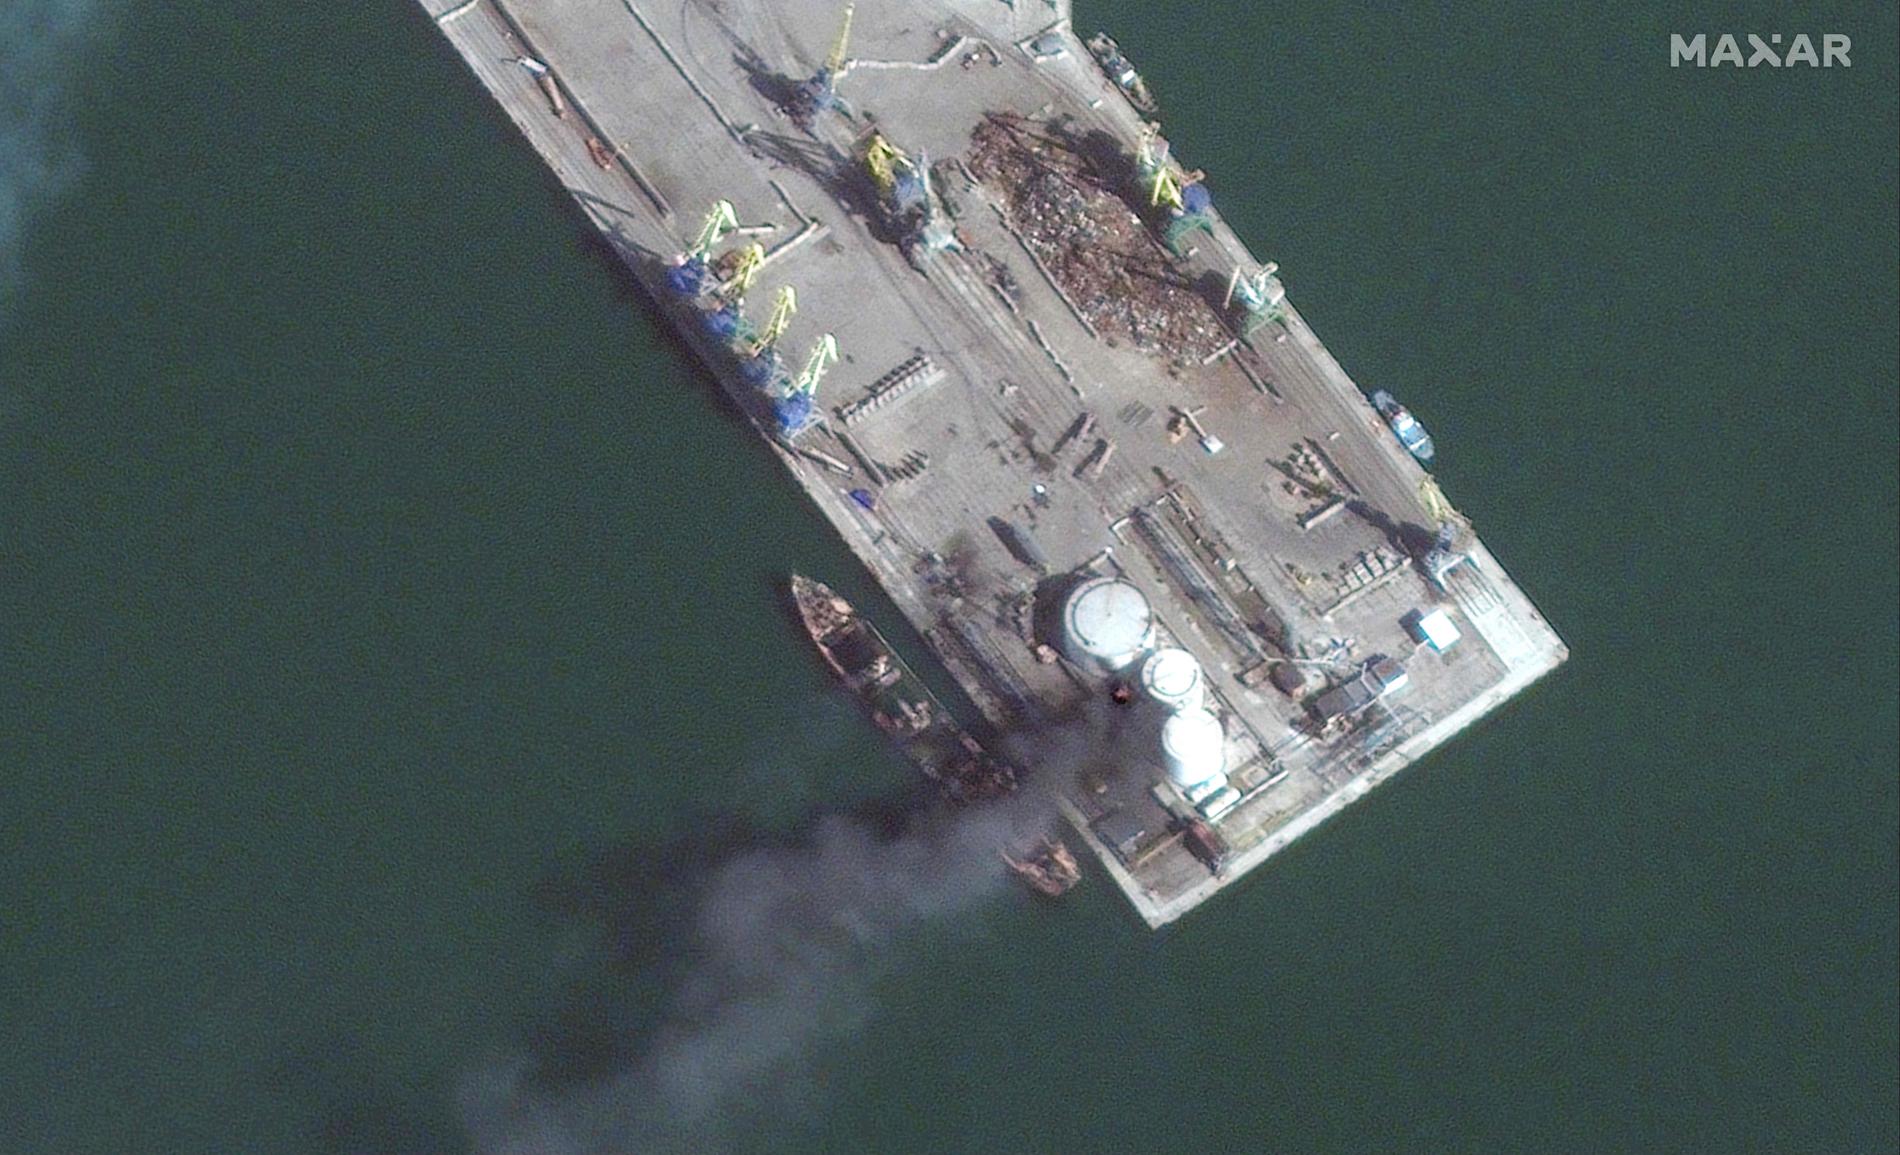 Nuove immagini satellitari mostrano una nave da guerra distrutta – VG